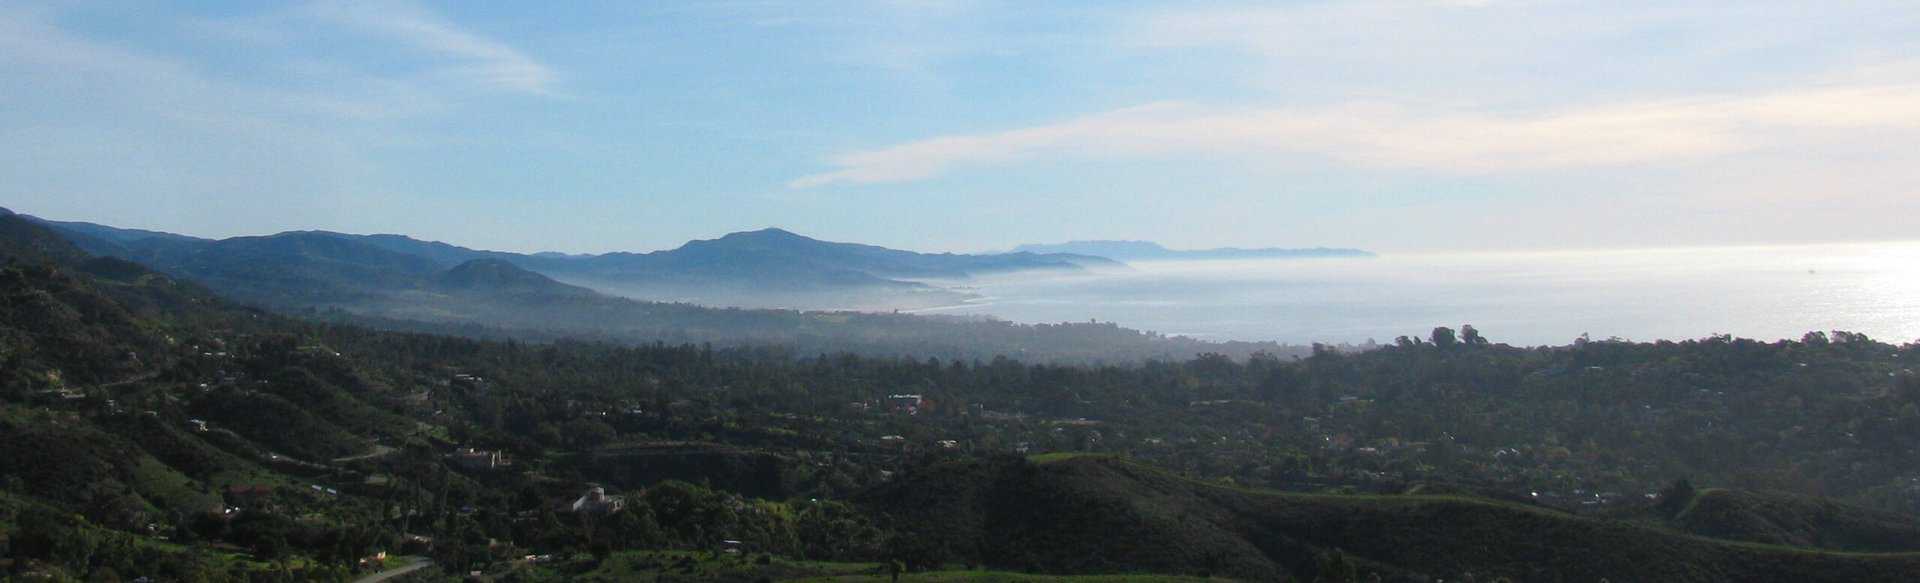 Montecito Foothills Aerial Shot